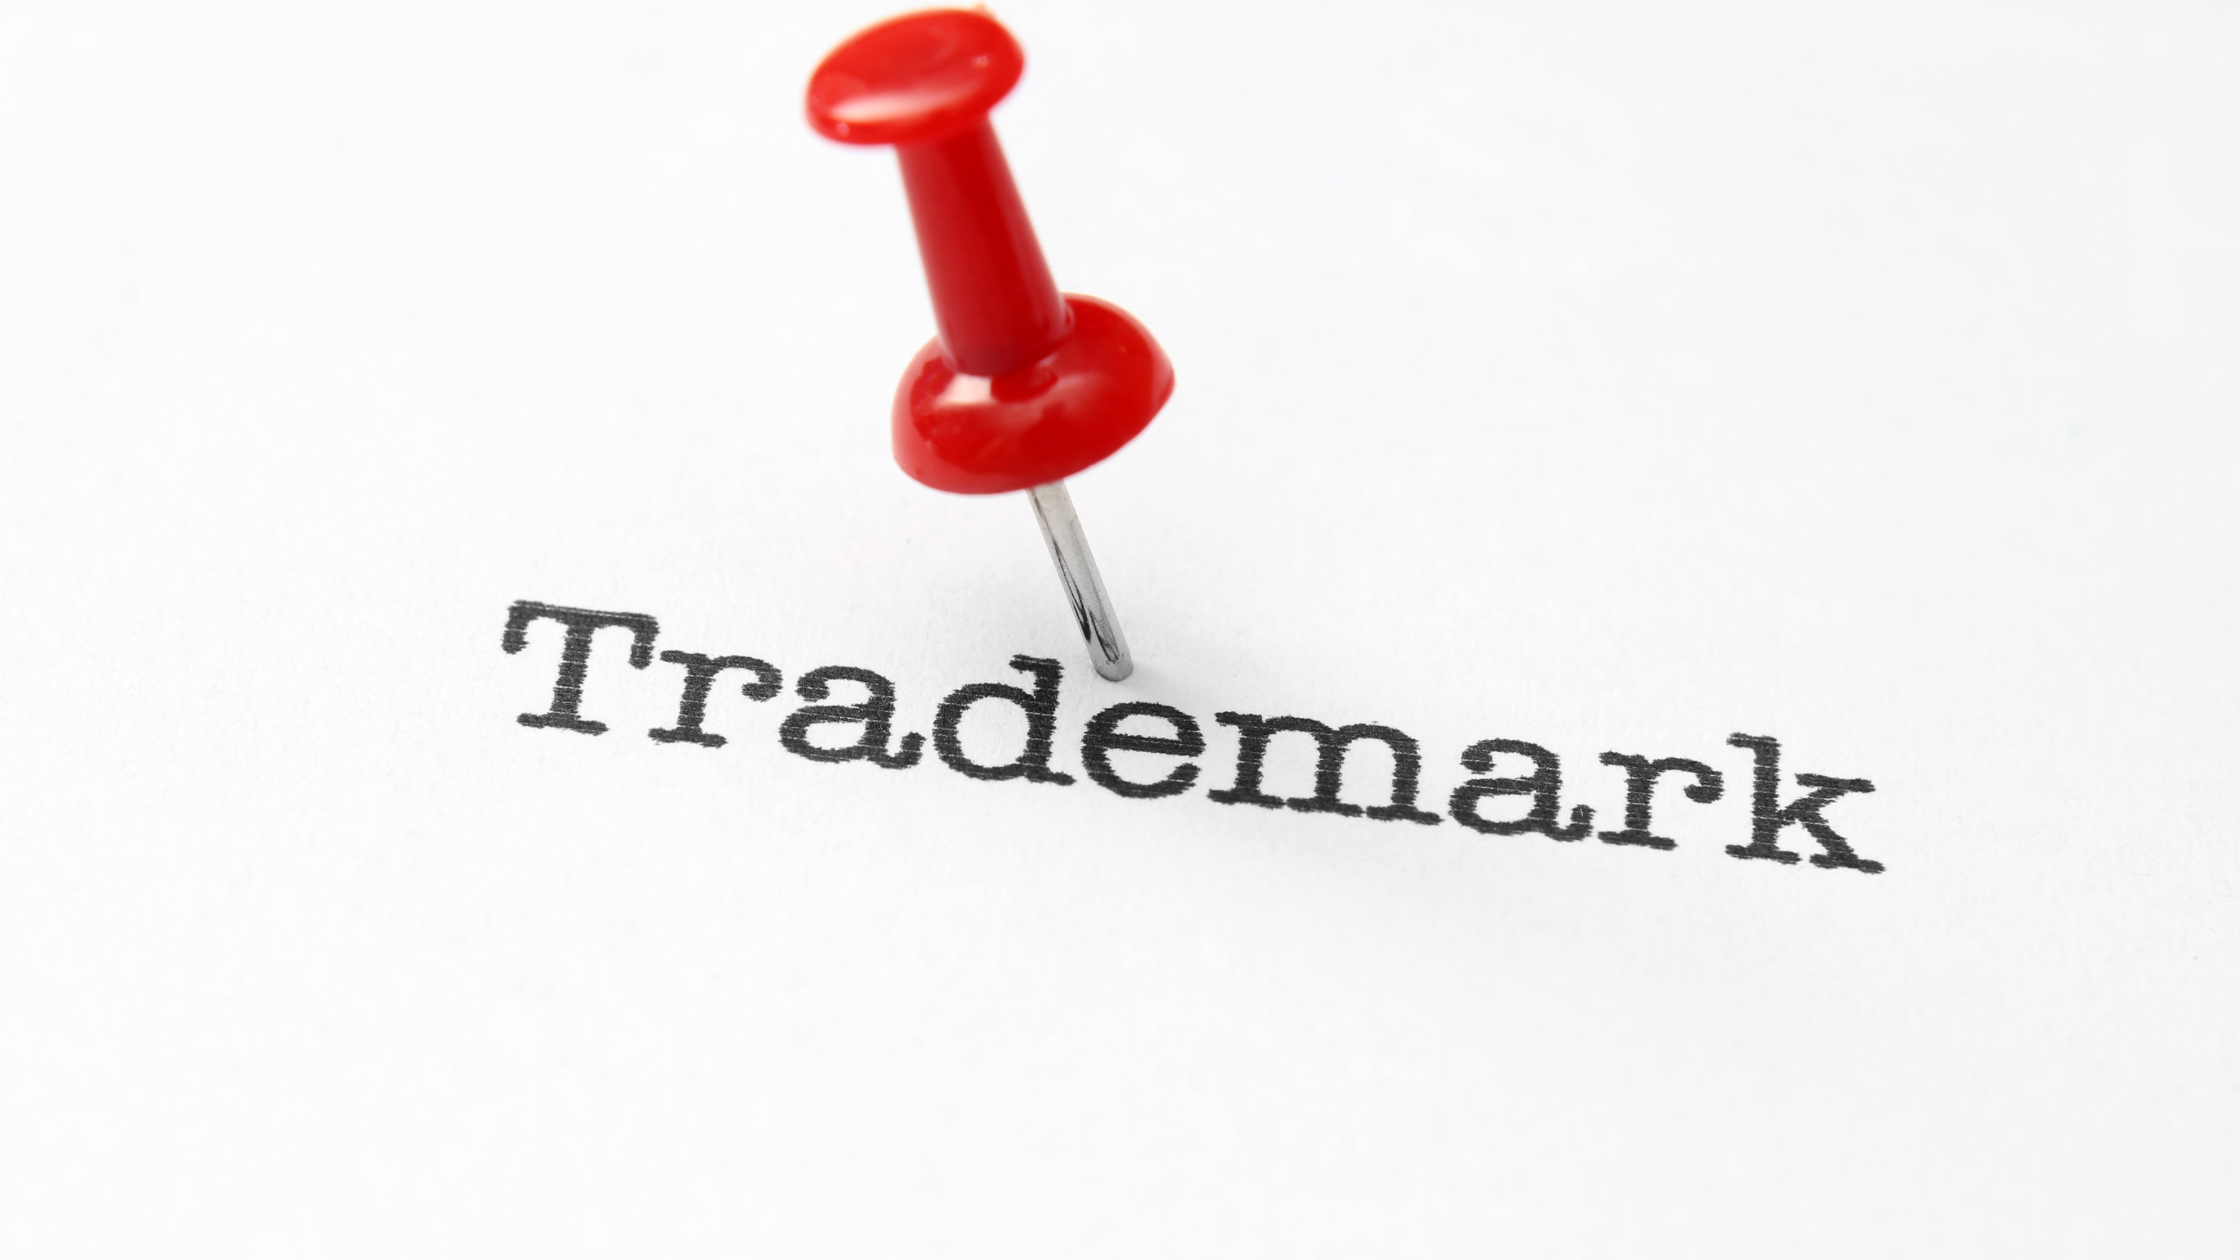 Amazon seller; trademark registered